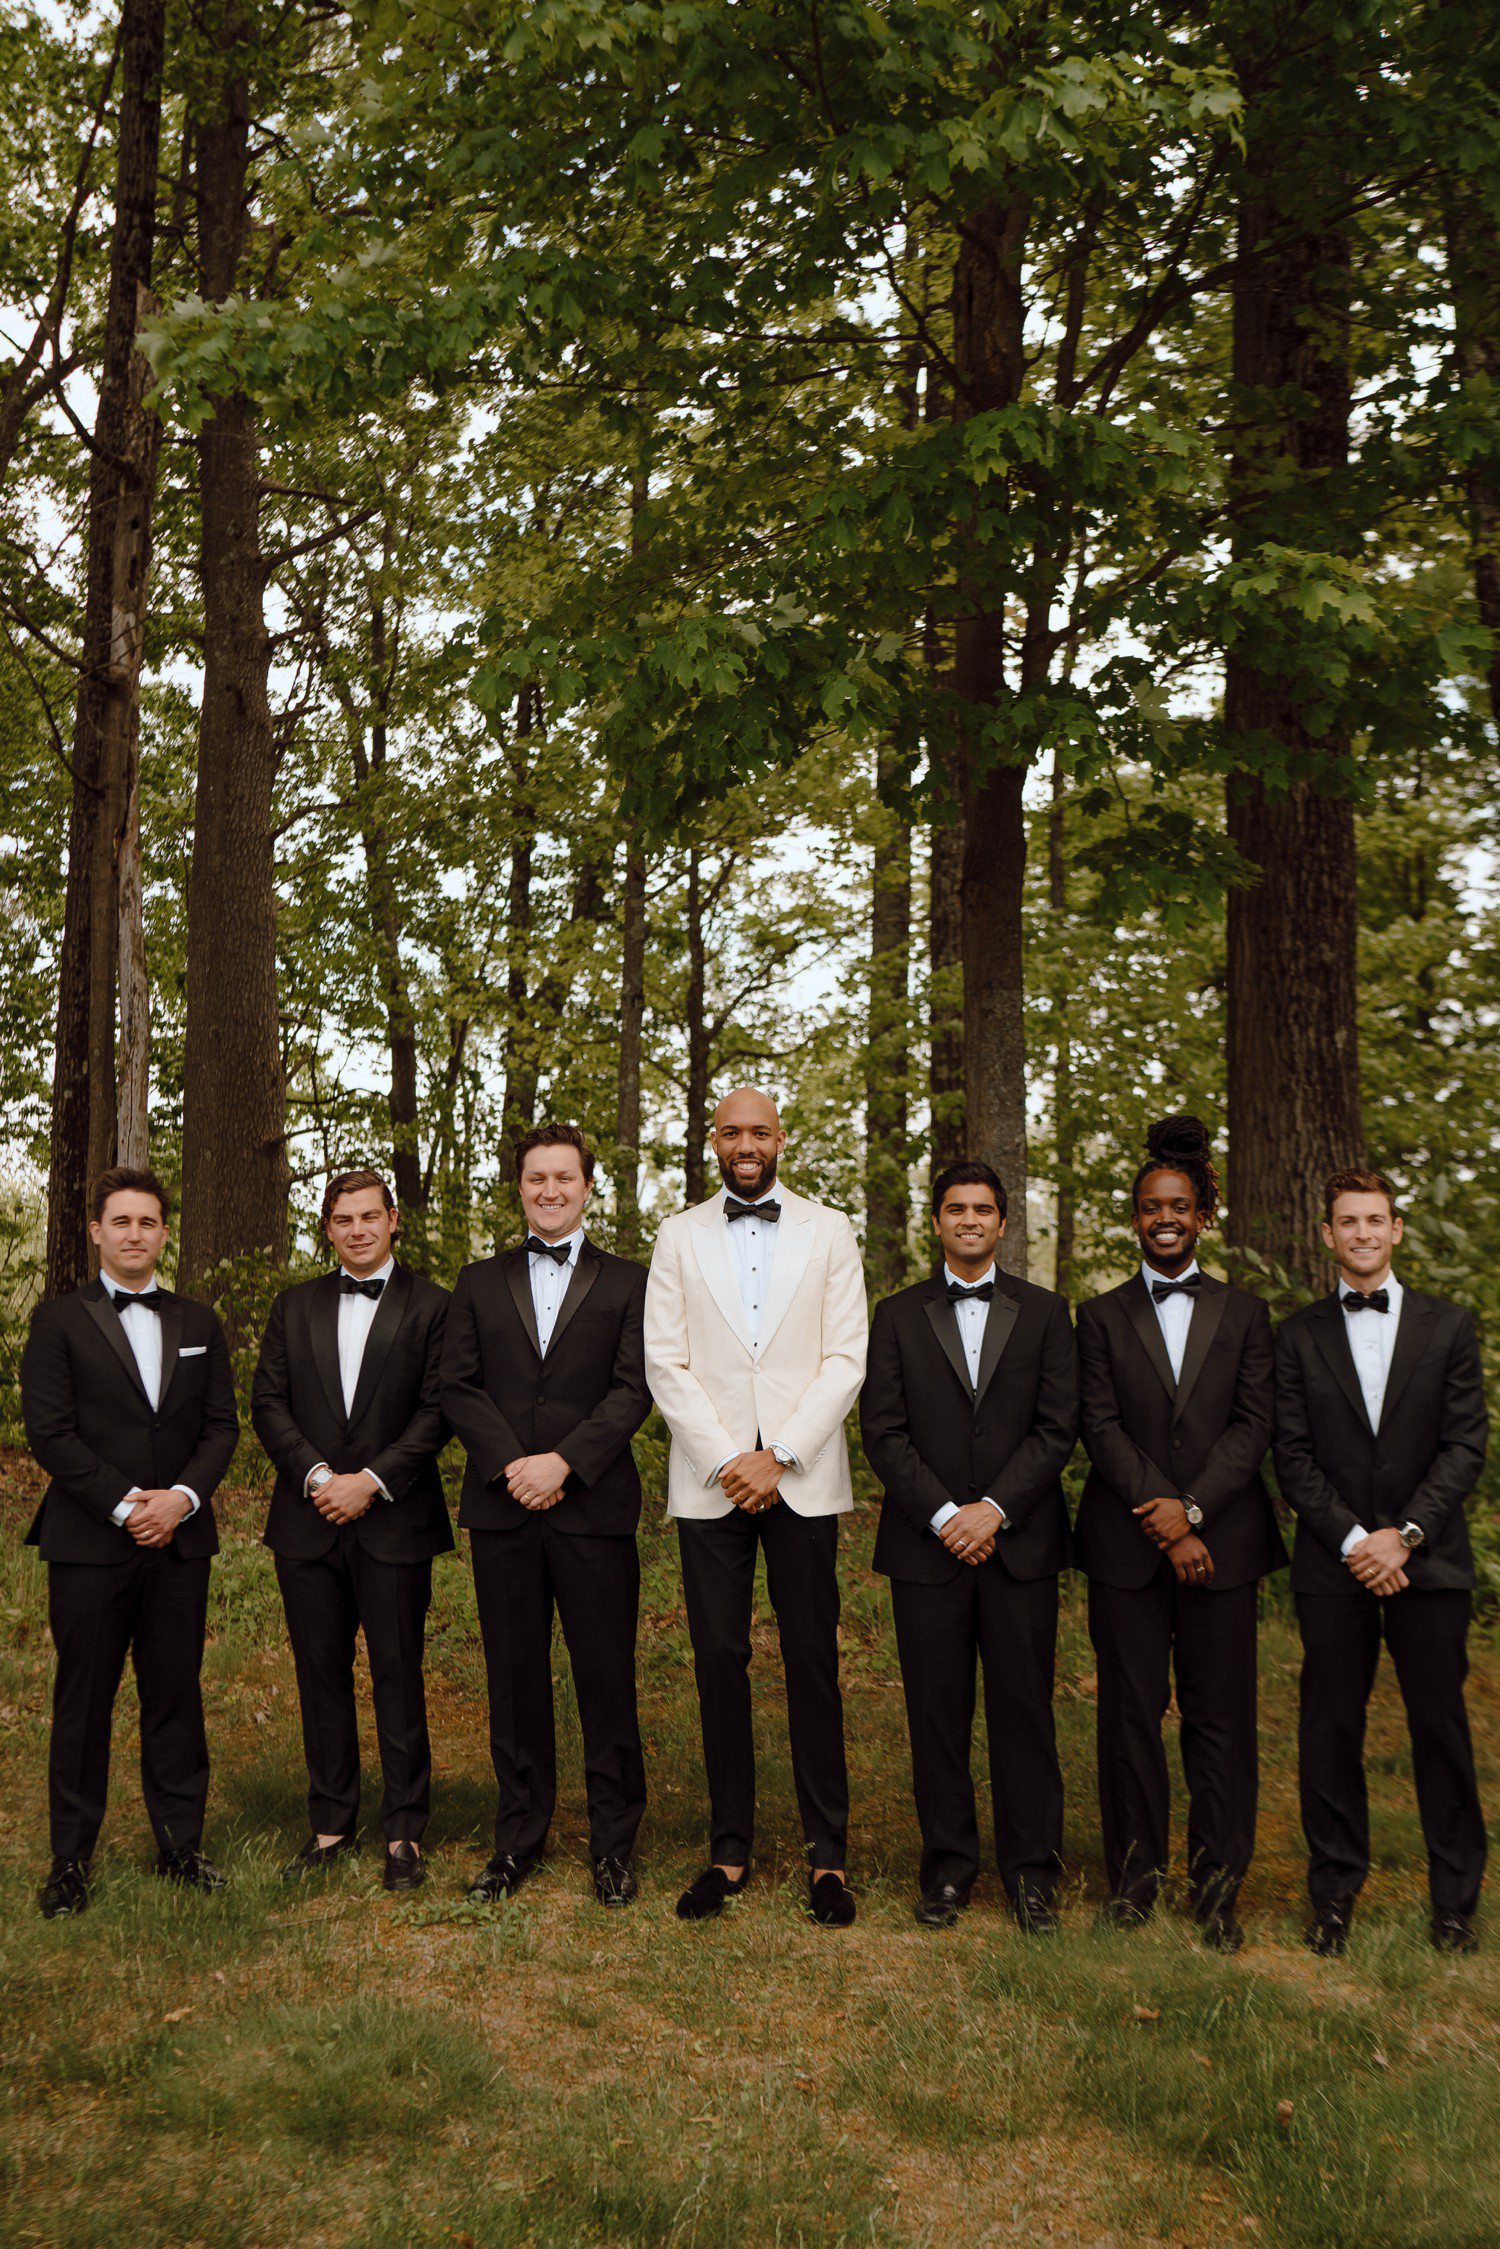 Groom in white suit jacket with groomsmen in all black. 